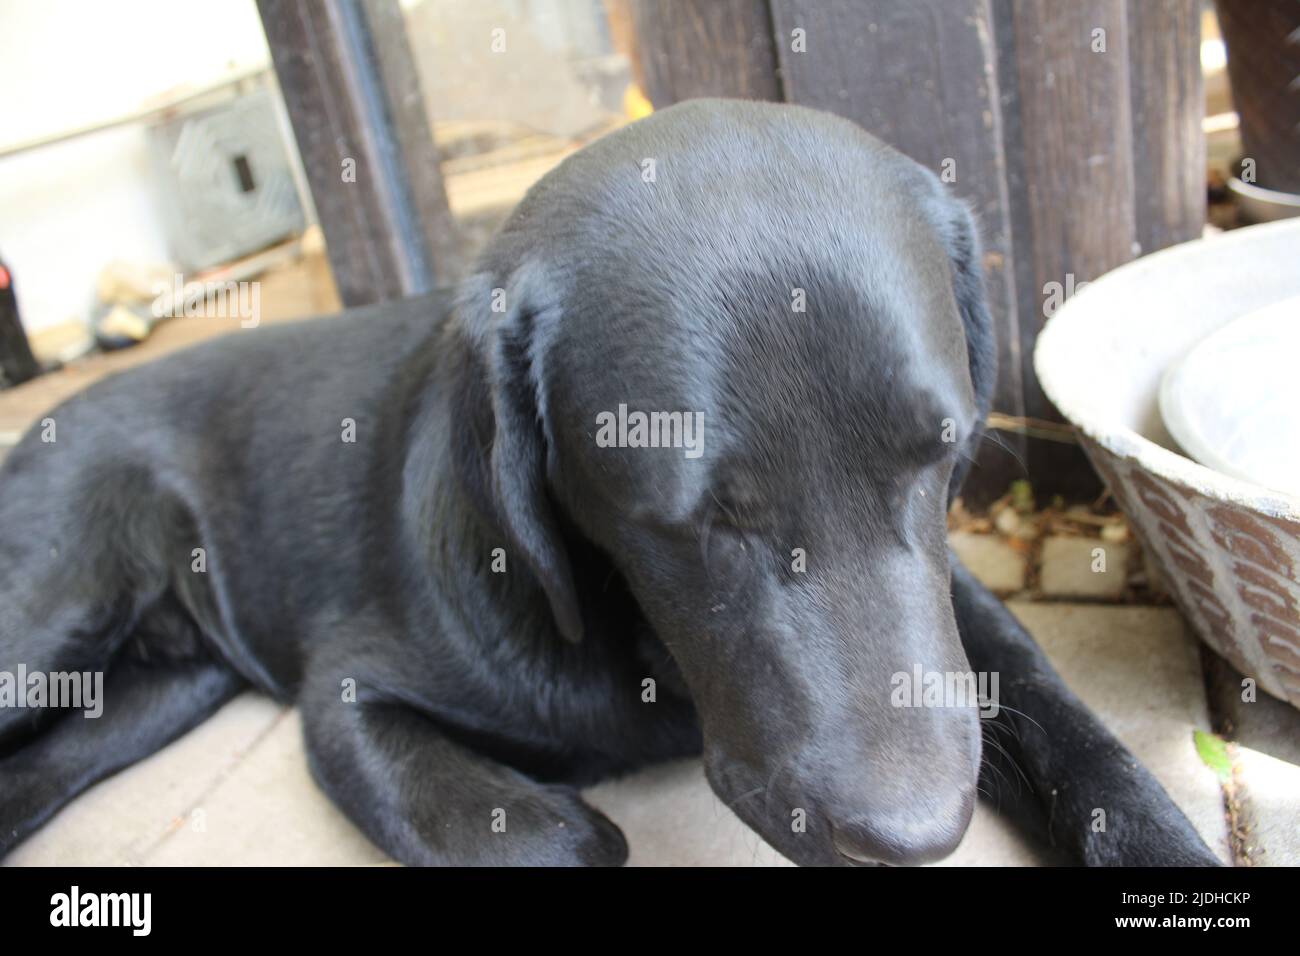 Fotografia di un Labrador Retriever nero. Cucciolo di Labrador in primo piano. Faccia nera del cane, occhi, orecchie, naso, zampe. Animali domestici nel giardino. Fotografia macro. Foto Stock